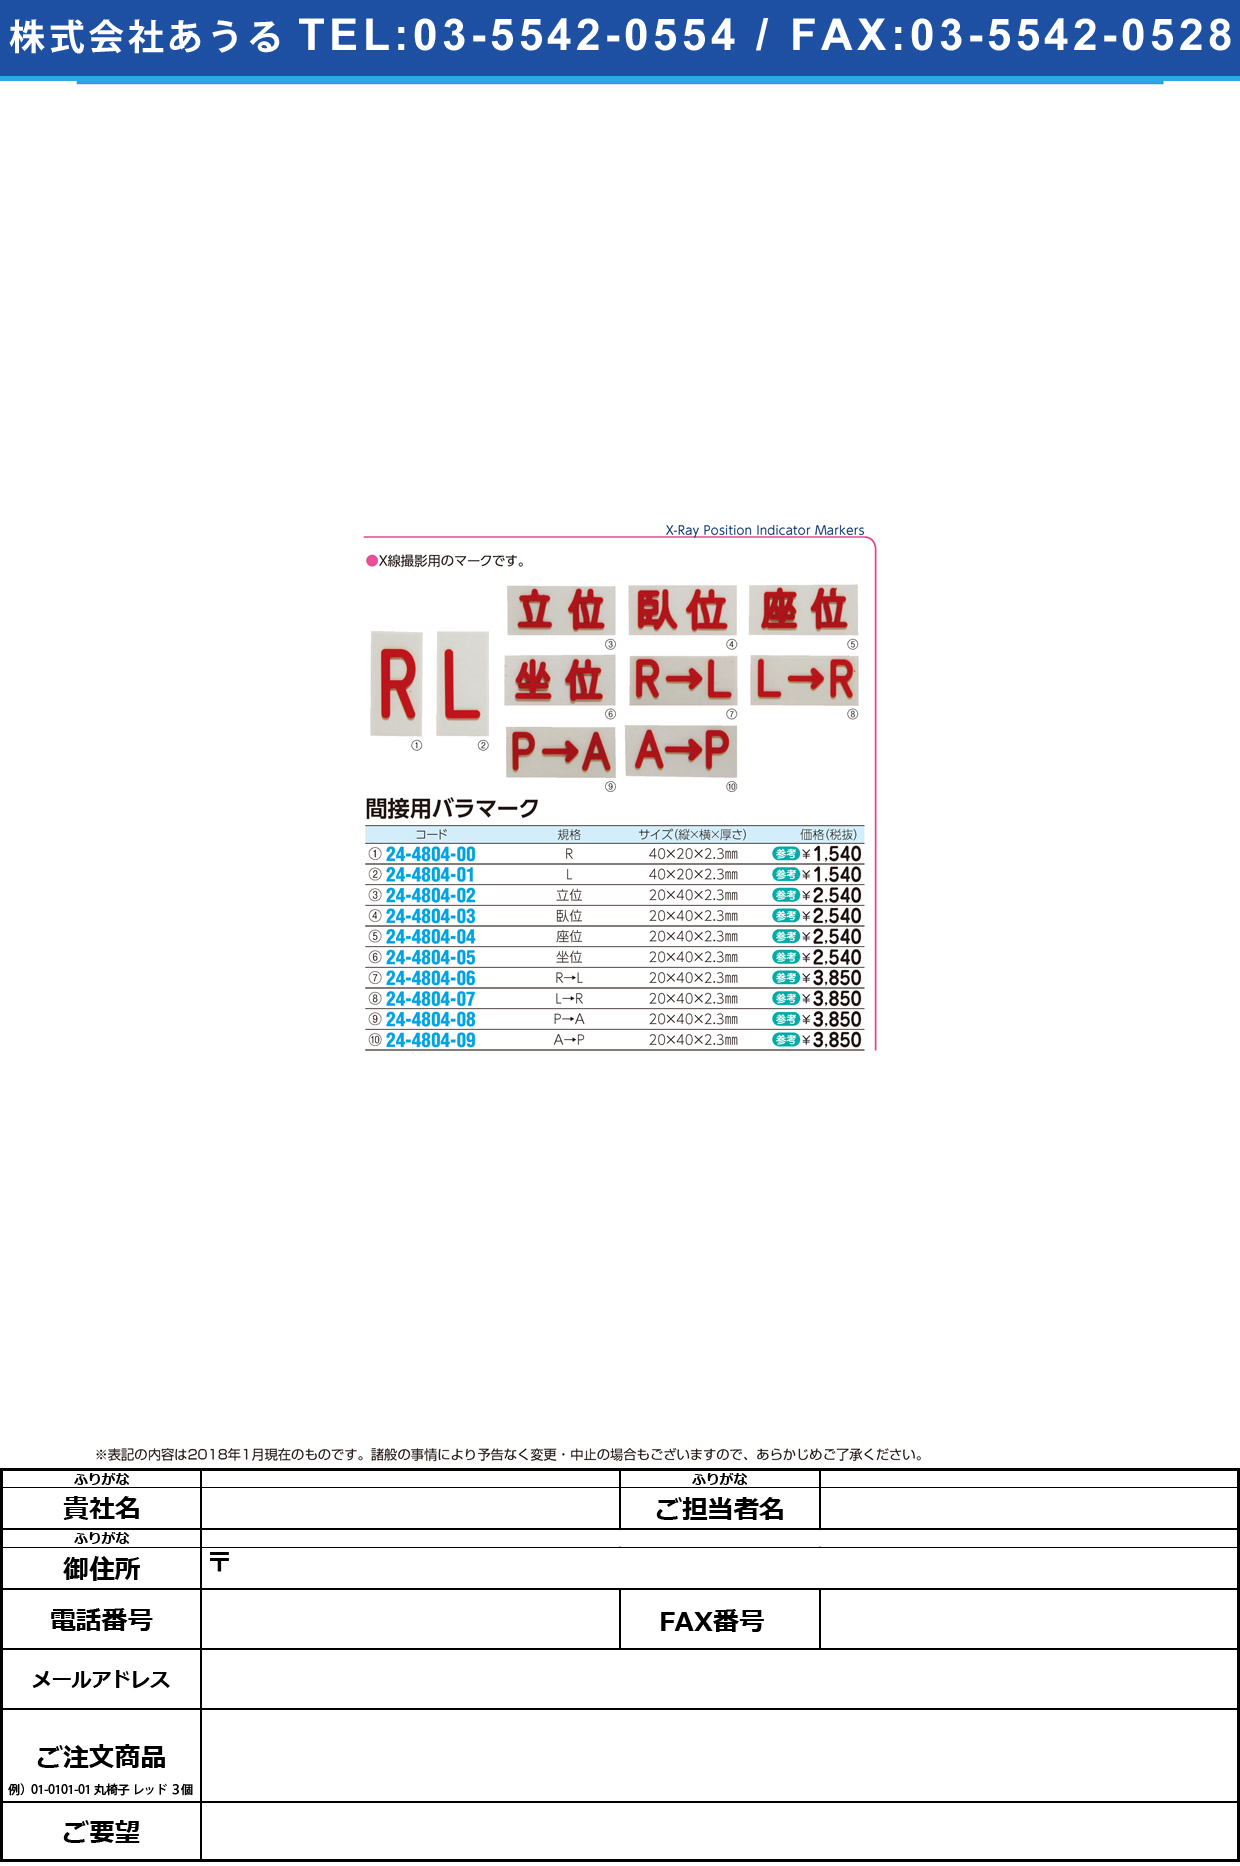 (24-4804-06)間接用バラマークＲ→Ｌ 20X40X2.3MM ｶﾝｾﾂﾖｳﾊﾞﾗﾏｰｸ【1個単位】【2019年カタログ商品】